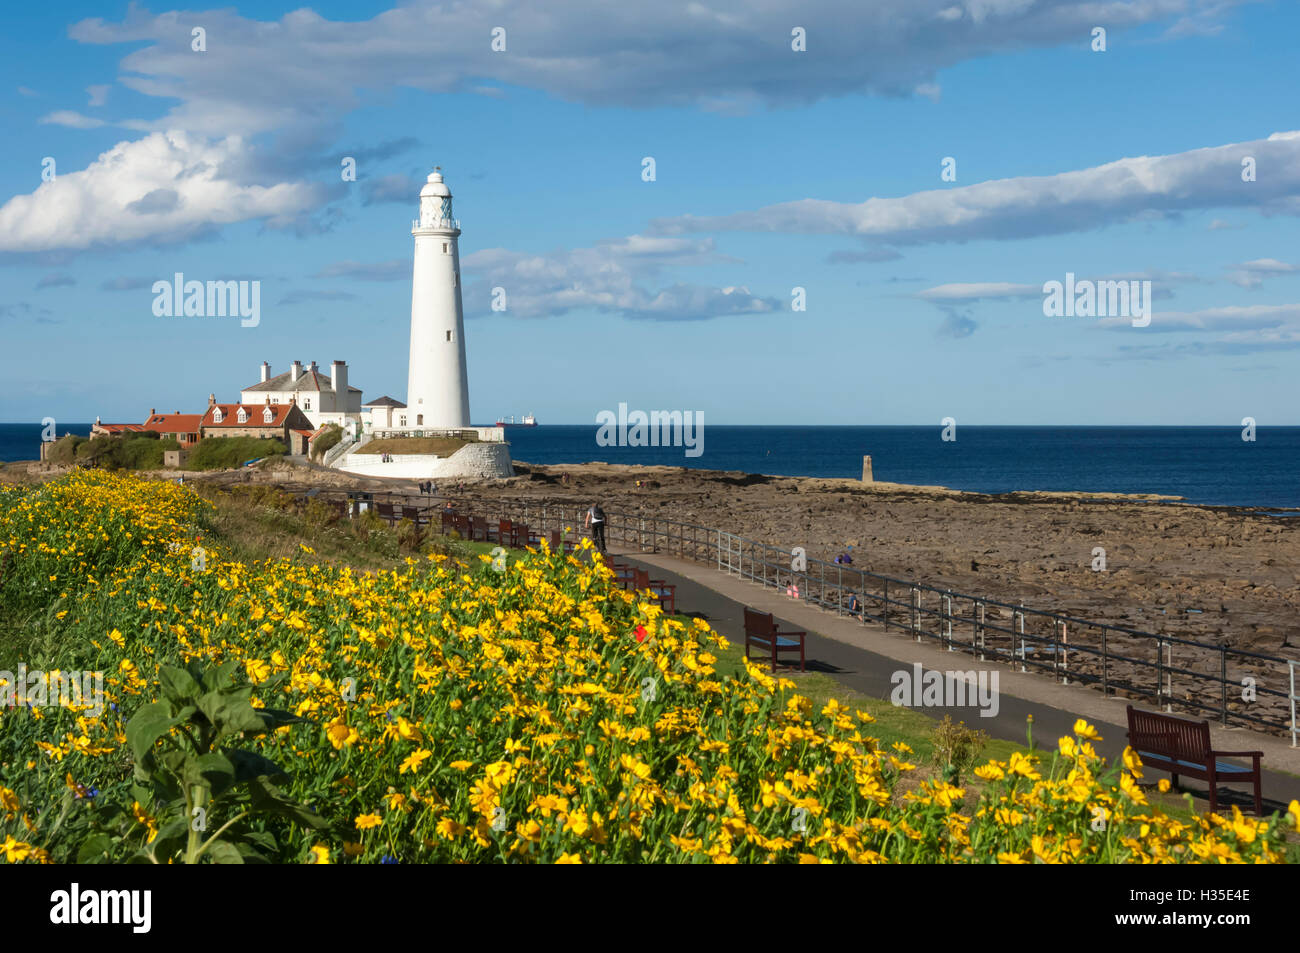 St. Mary's Lighthouse, Whitley Bay, Northumbria, England, UK Stock Photo